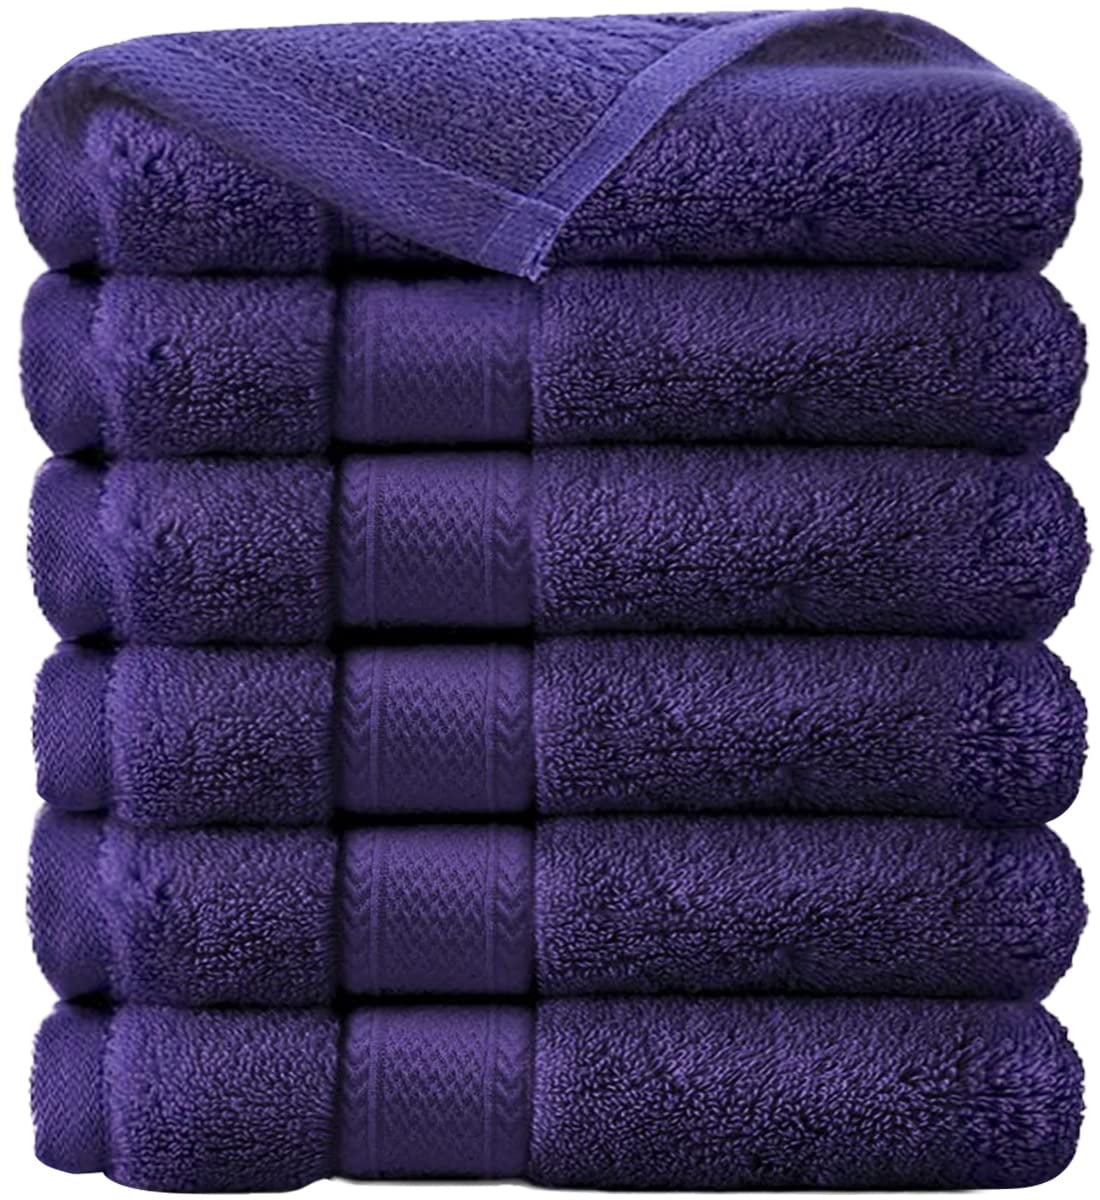 Salon Towel 4 Pack 16 x 27 Gym Towel Hand Cotton Soft Towels 